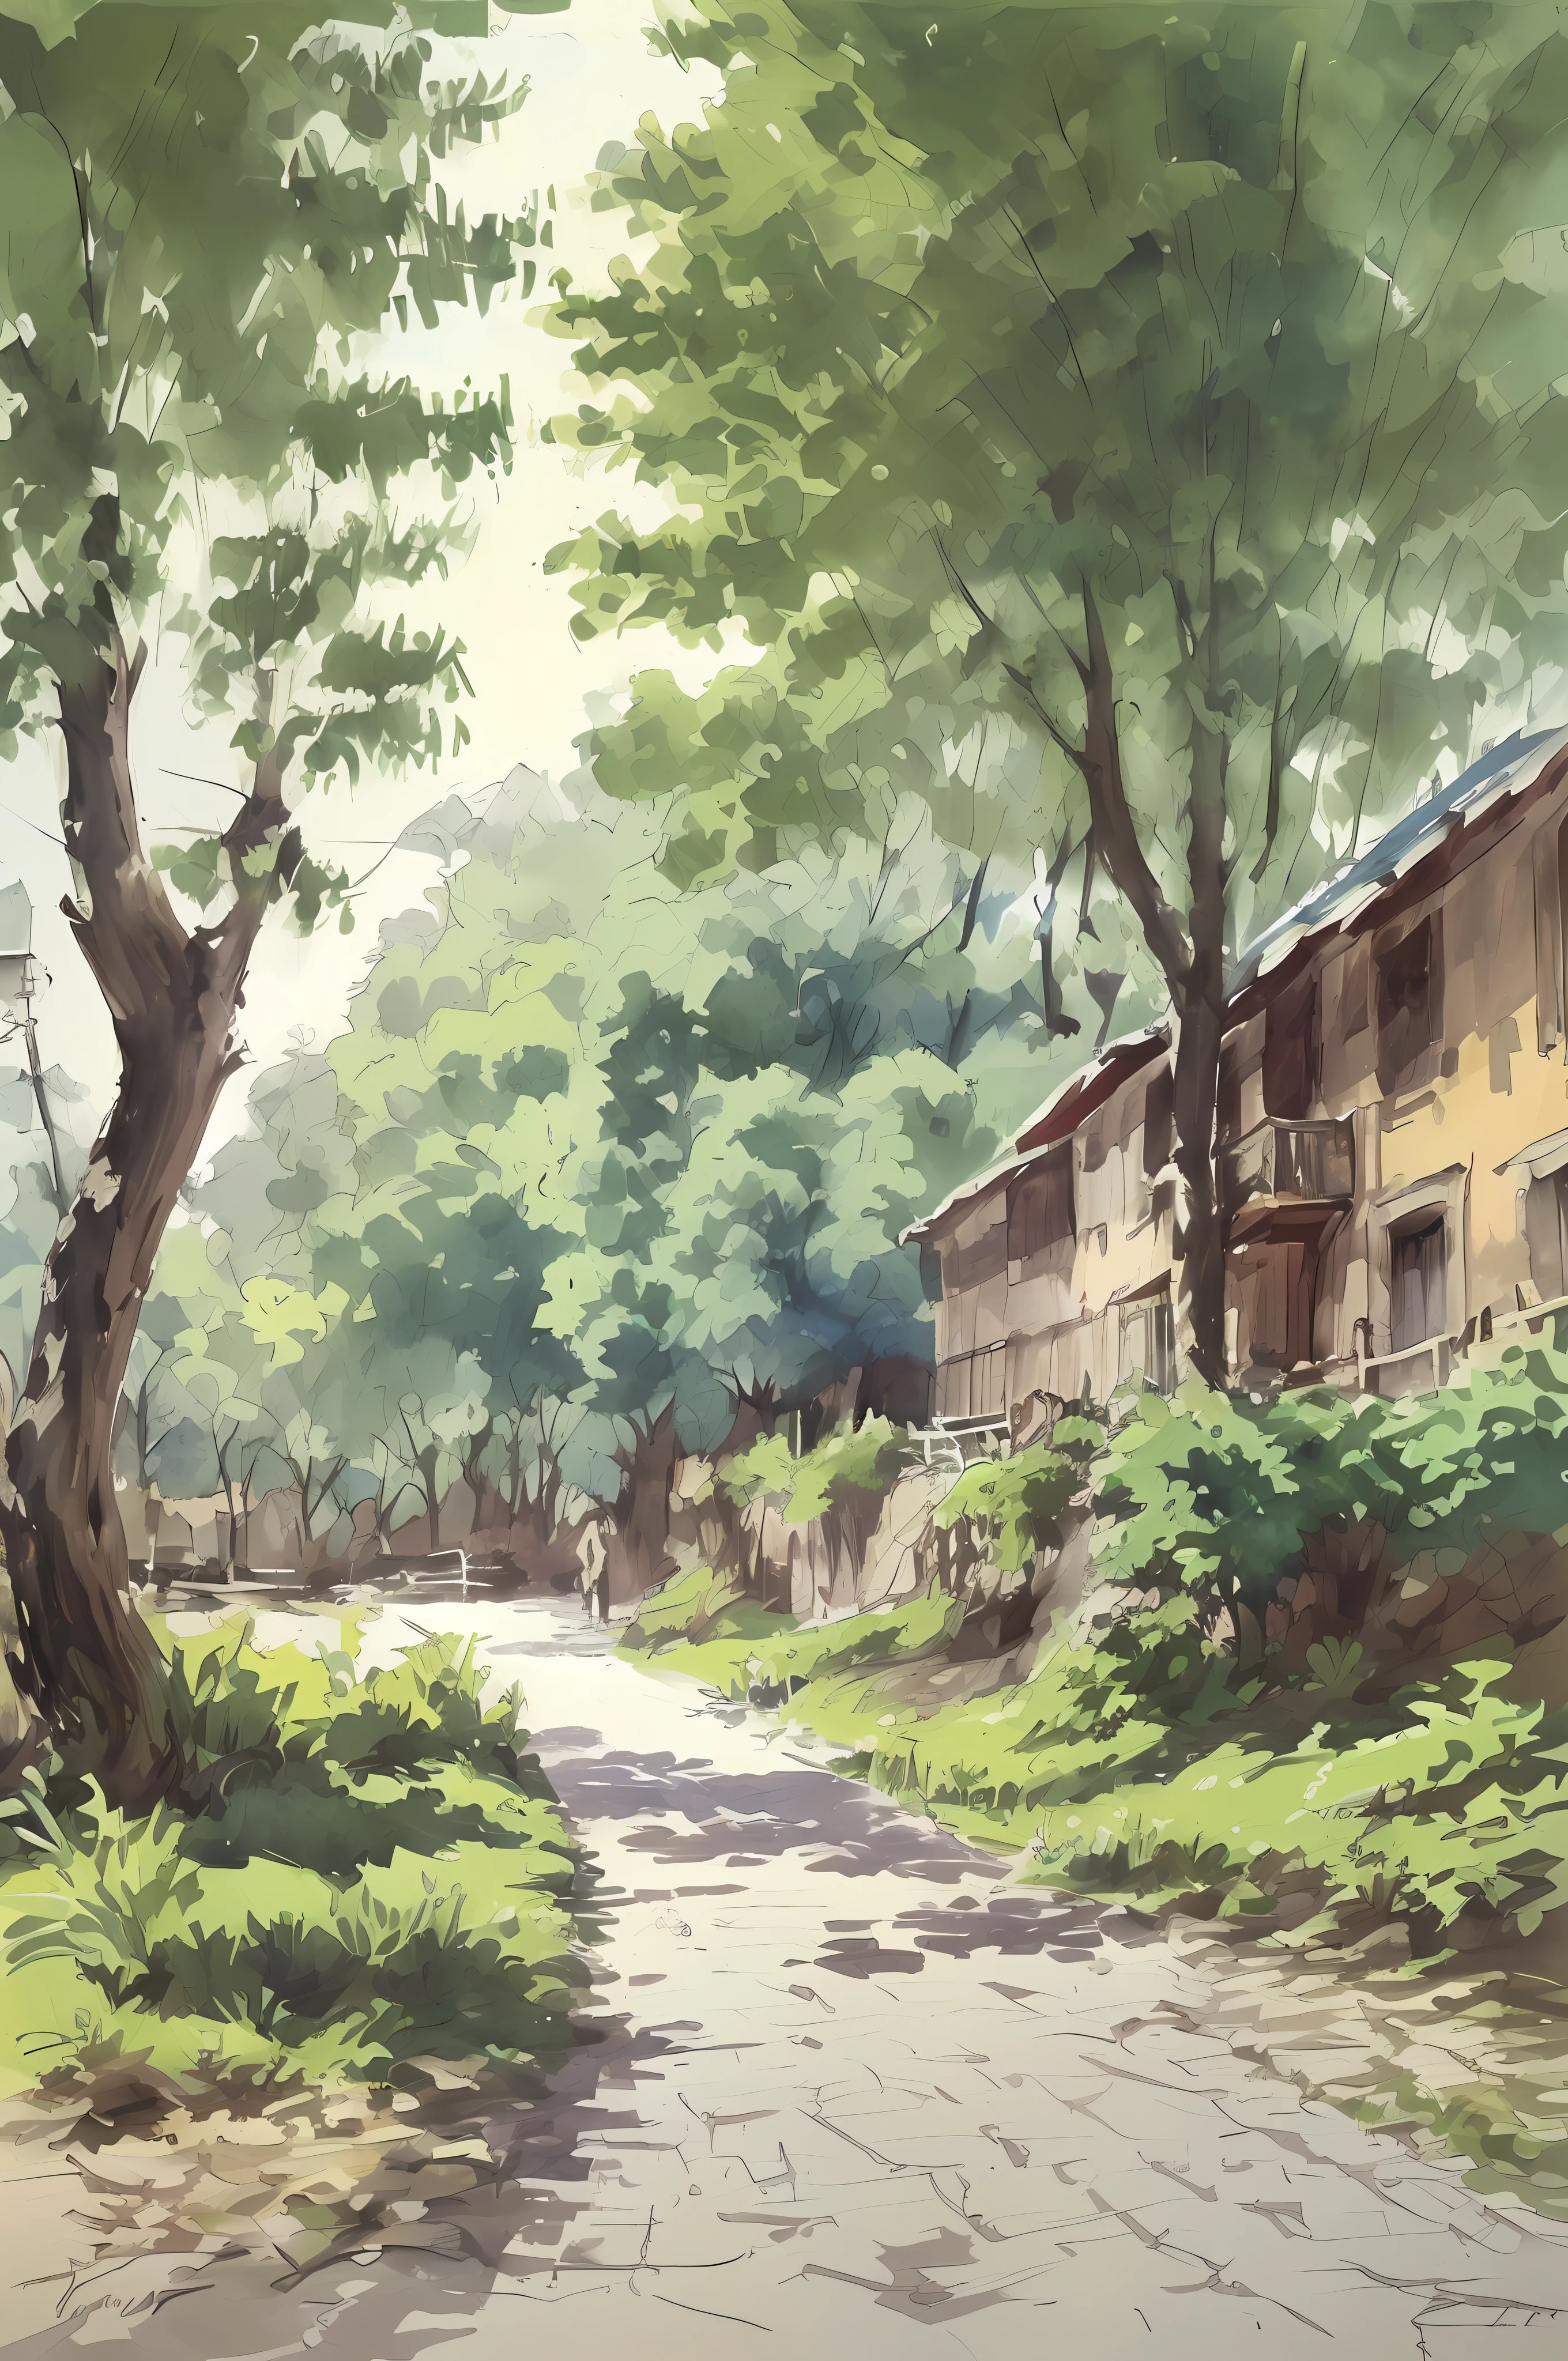 pintura de acuarela, Pequeño camino de casas rurales chinas., árboles, sol brillante, sombra,